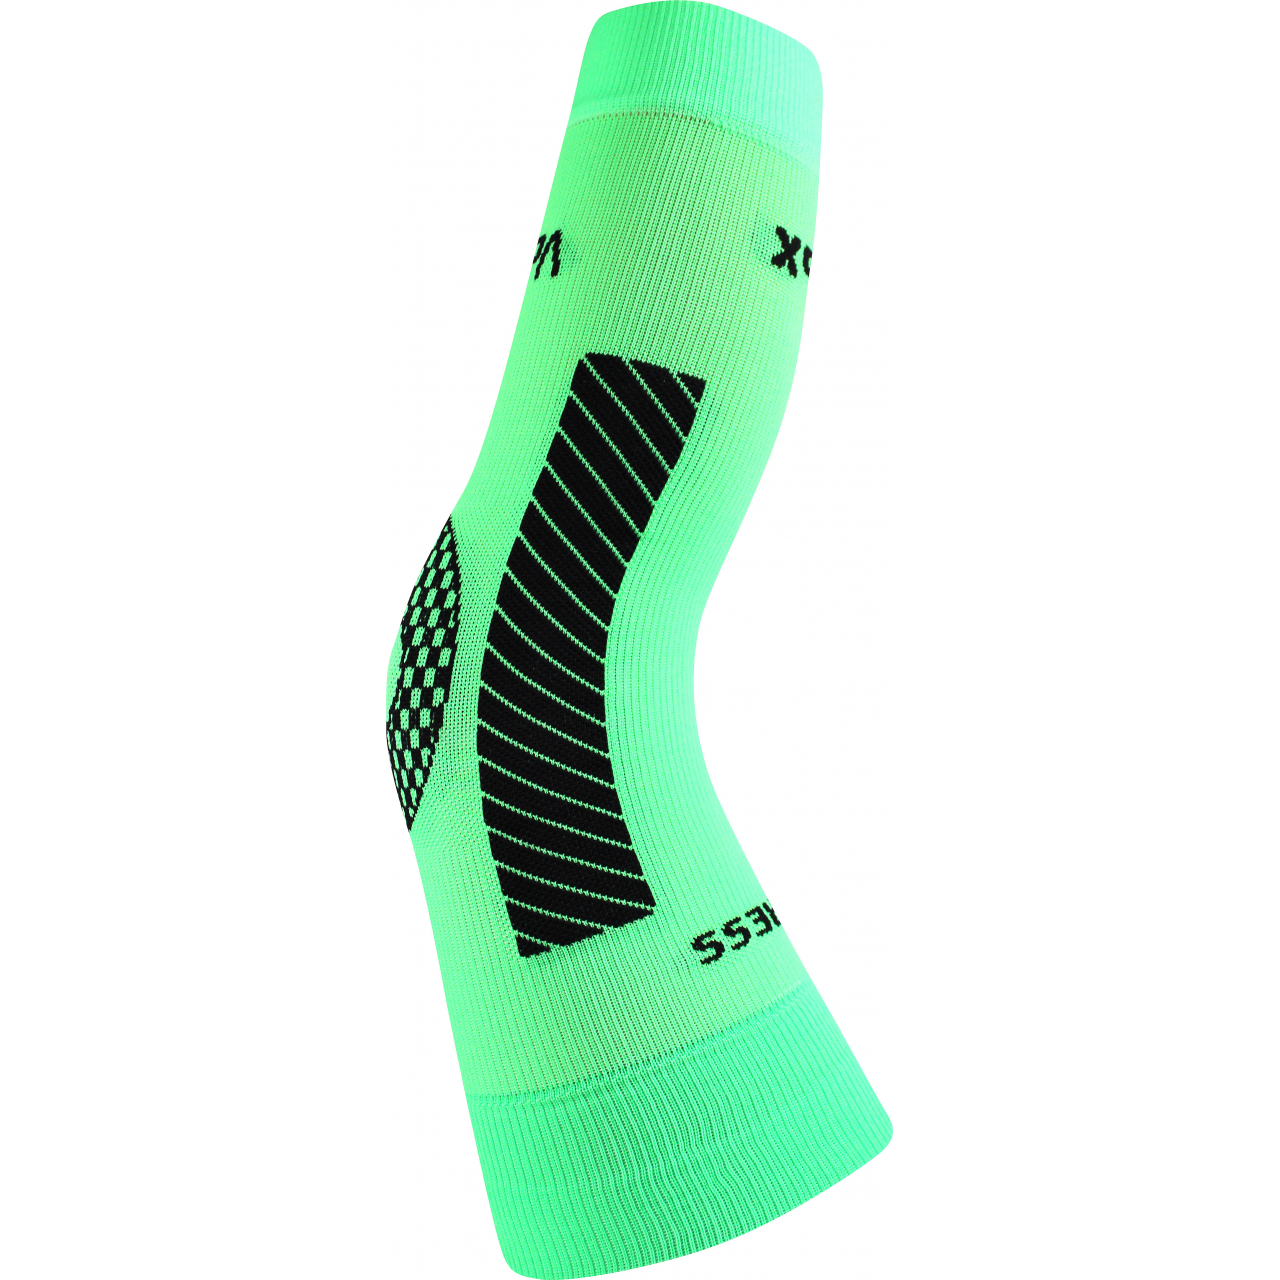 Návlek kompresní Voxx Protect koleno - zelený svítící, L/XL